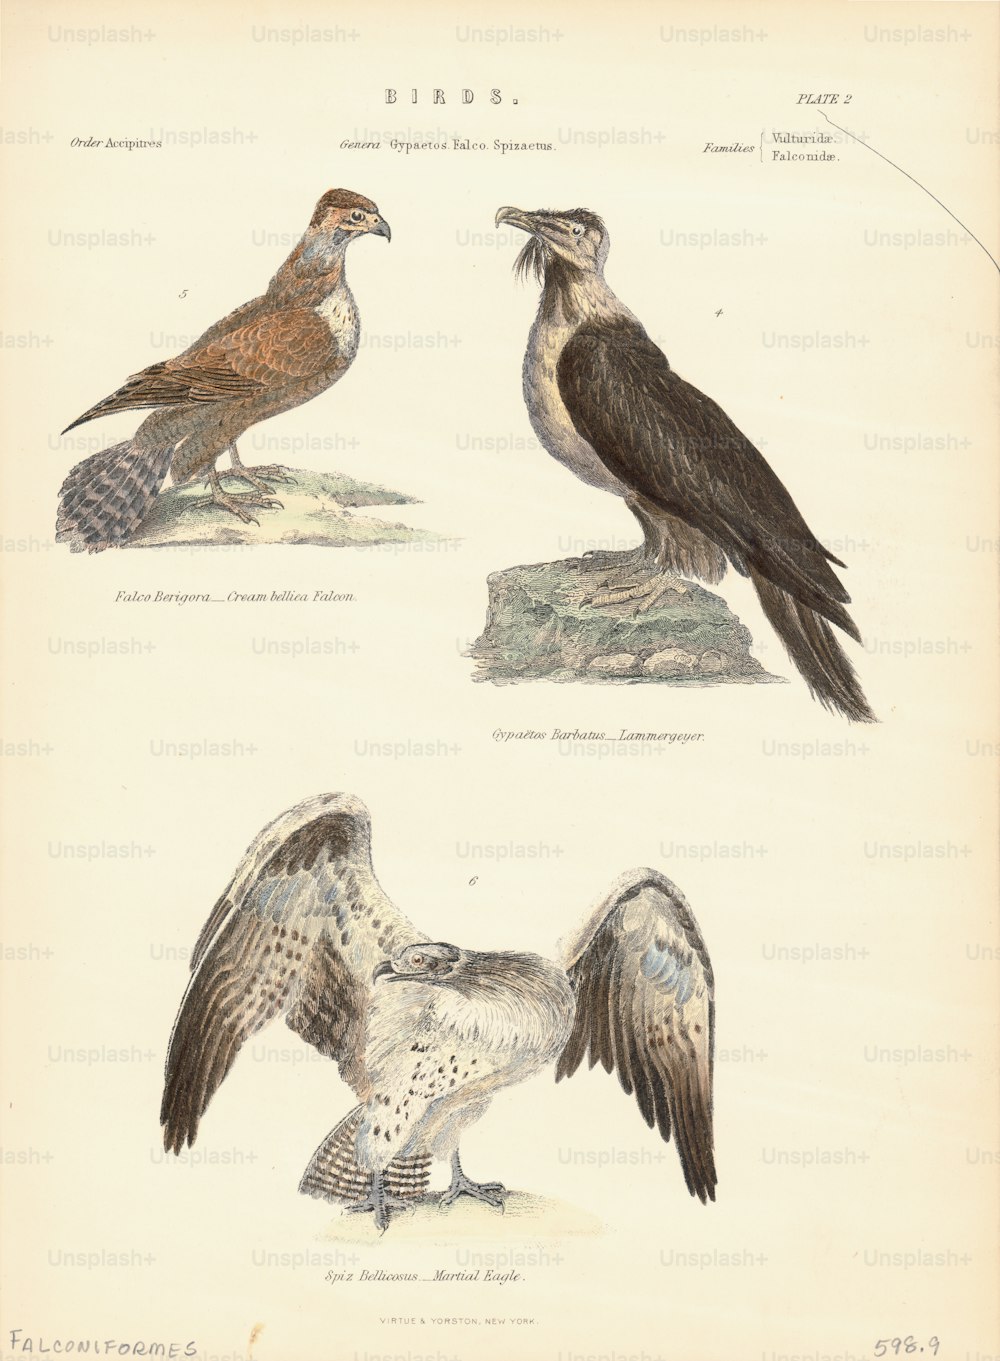 Illustrazione a colori di un certo numero di specie di uccelli dell'Ordine Falconiformes, costituiti da rapaci diurni tra cui; l'aquila marziale e il falco bruno. (Foto di Kean Collection/Archive Photos/Getty Images)